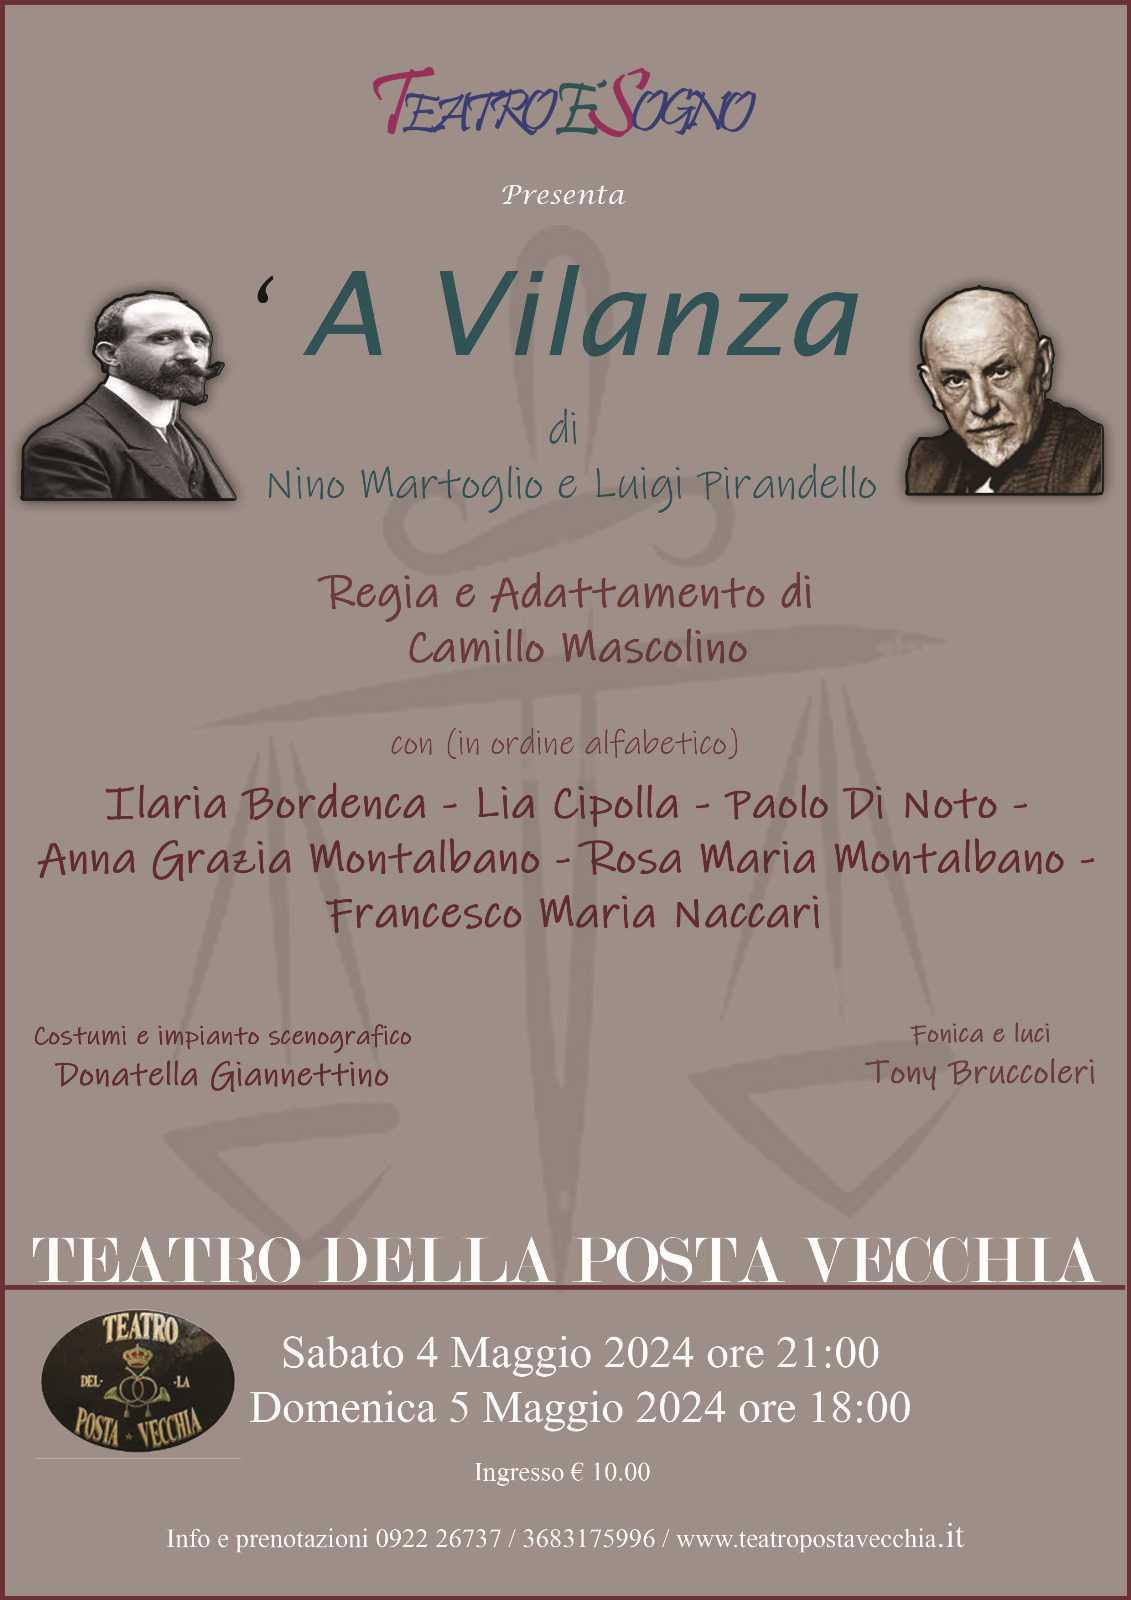 TeatroèSogno presenta "A Vilanza" di Nino Martoglio e Luigi Pirandello (inizio ore 18:00)